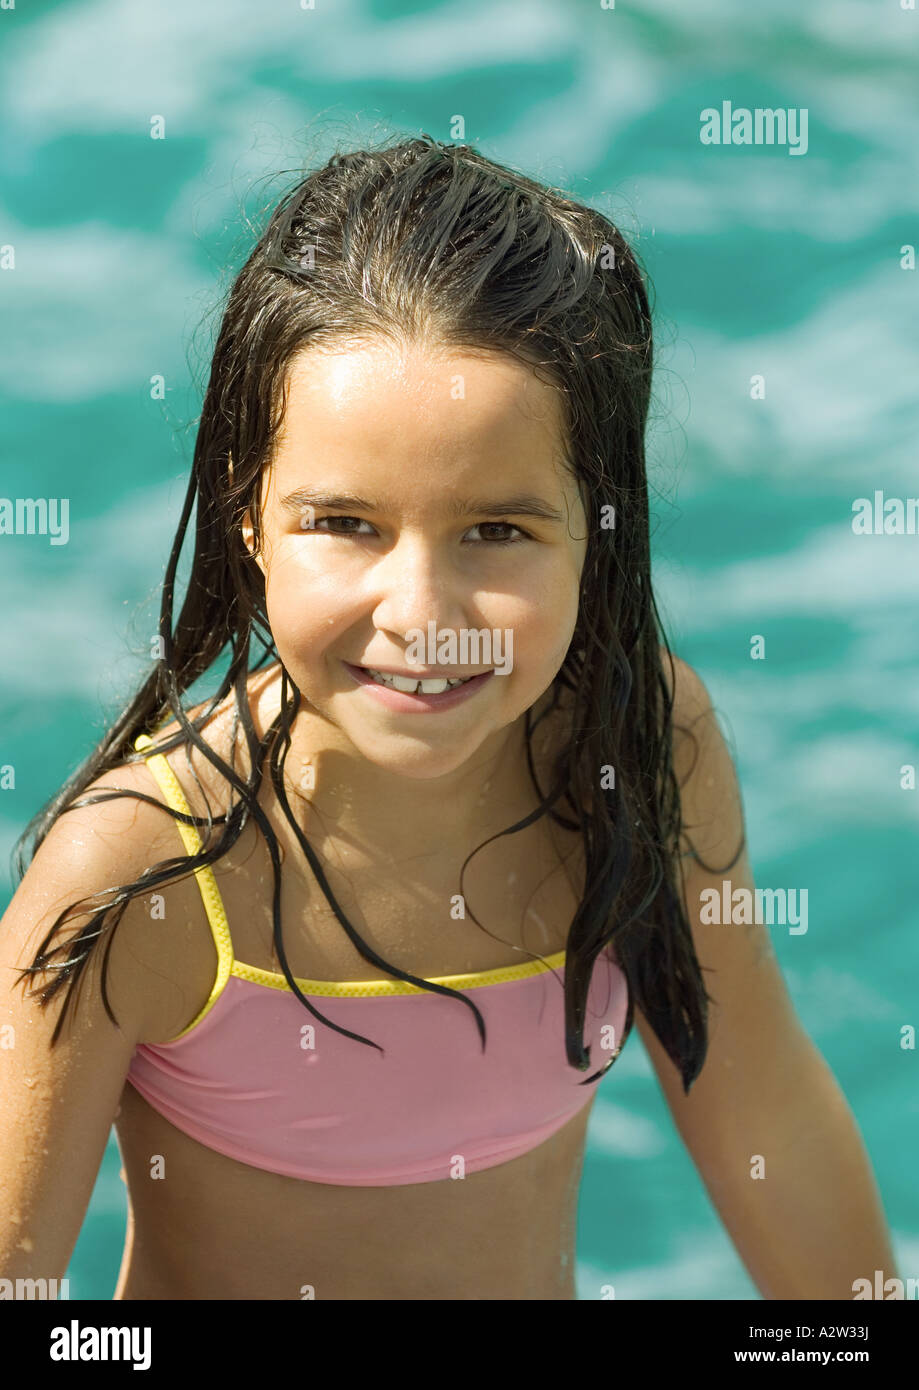 Mädchen Im Badeanzug Wasser Im Hintergrund Porträt Stockfotografie Alamy 1077